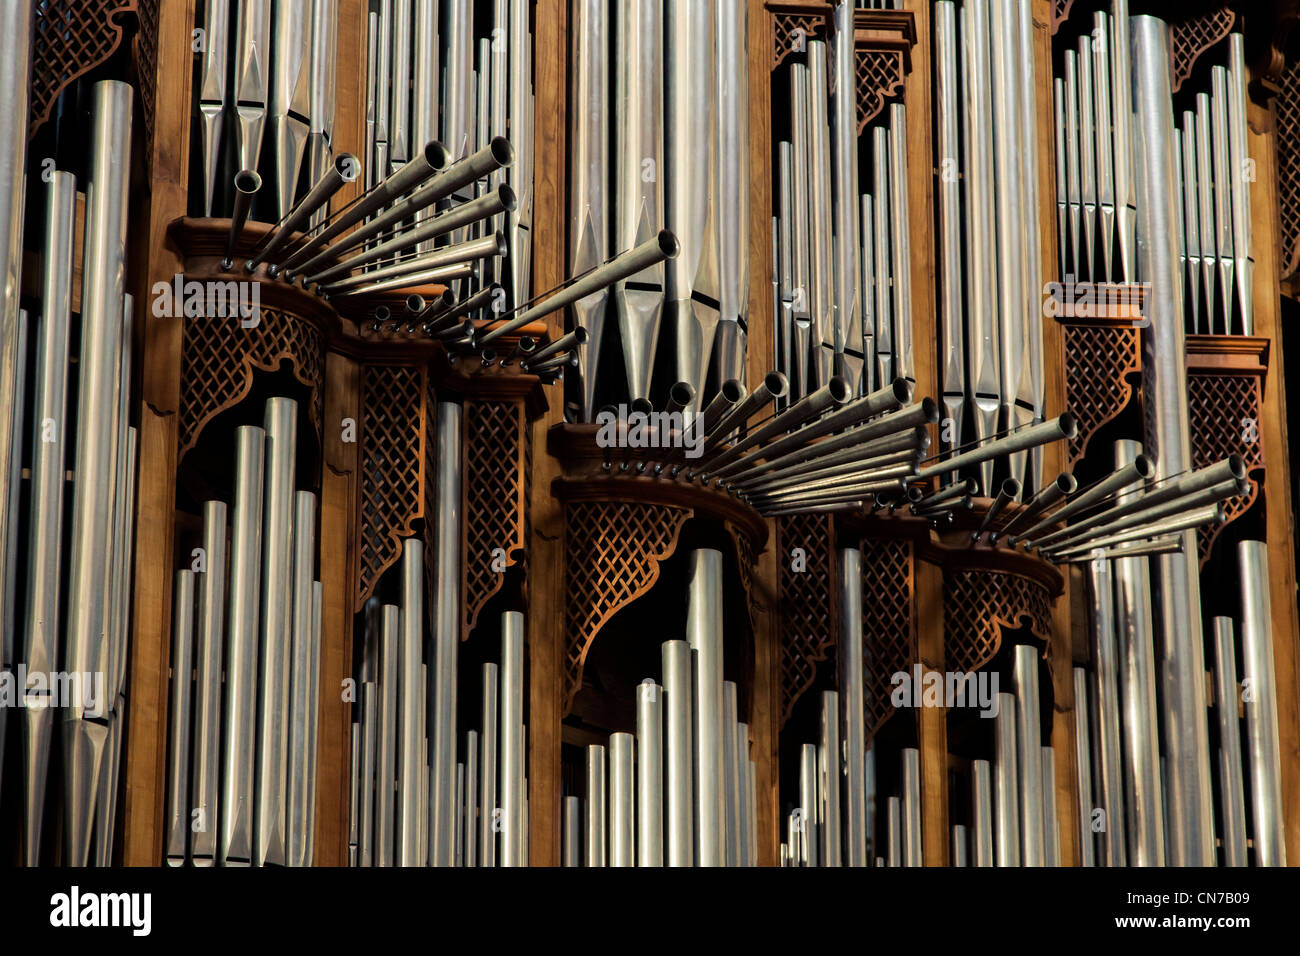 Eine massive Orgel in der Basilika von St. Marys von Winkeln und Märtyrer in Rom, Italien Stockfoto